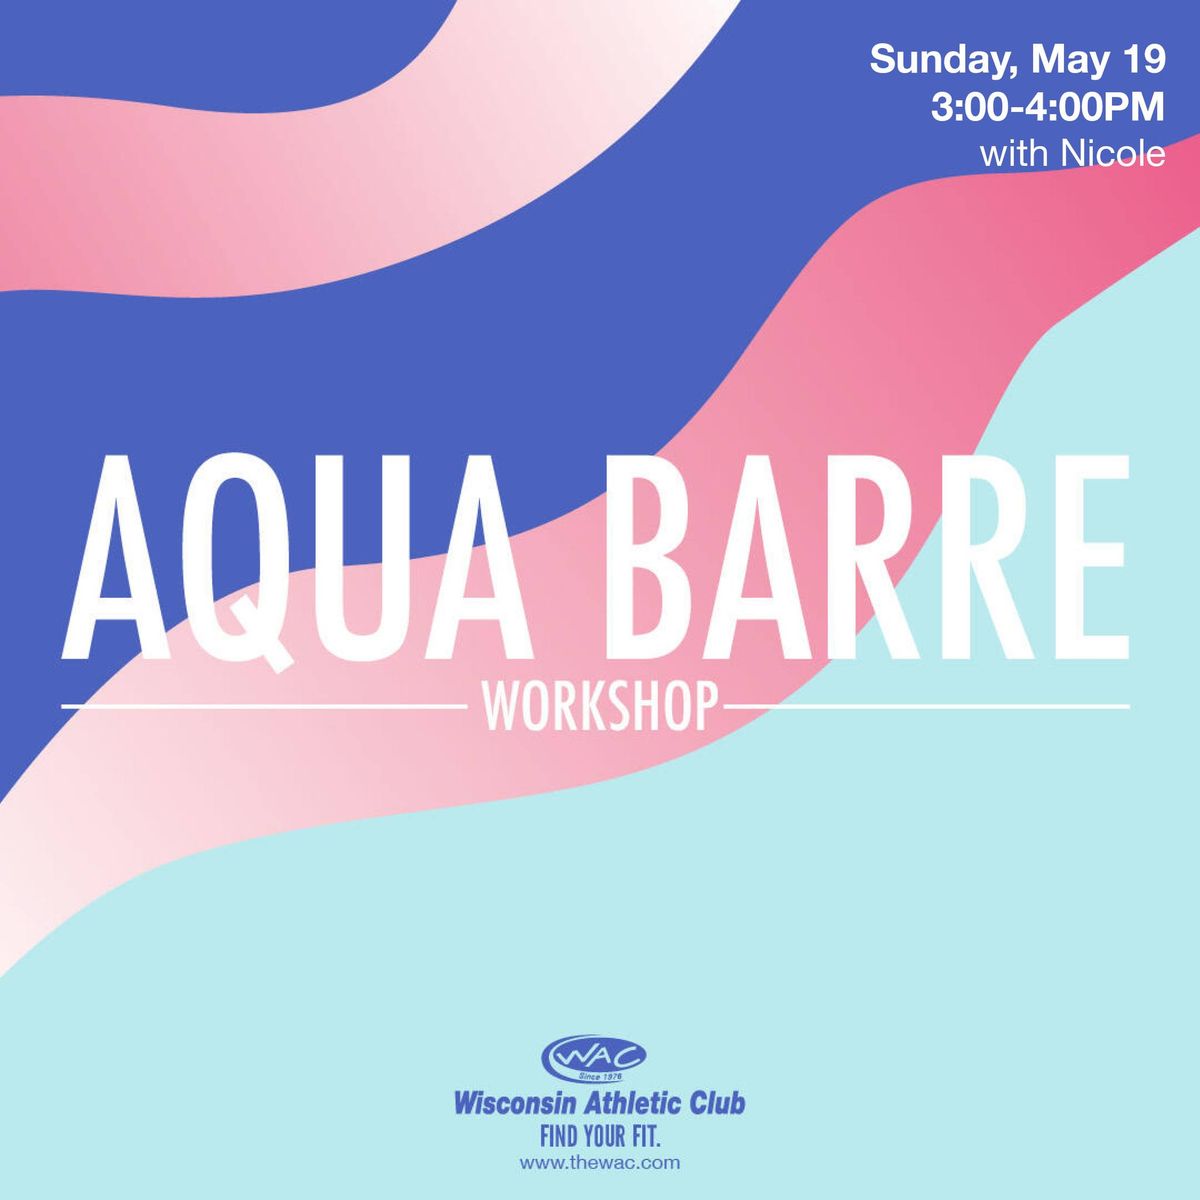 Aqua Barre Workshop